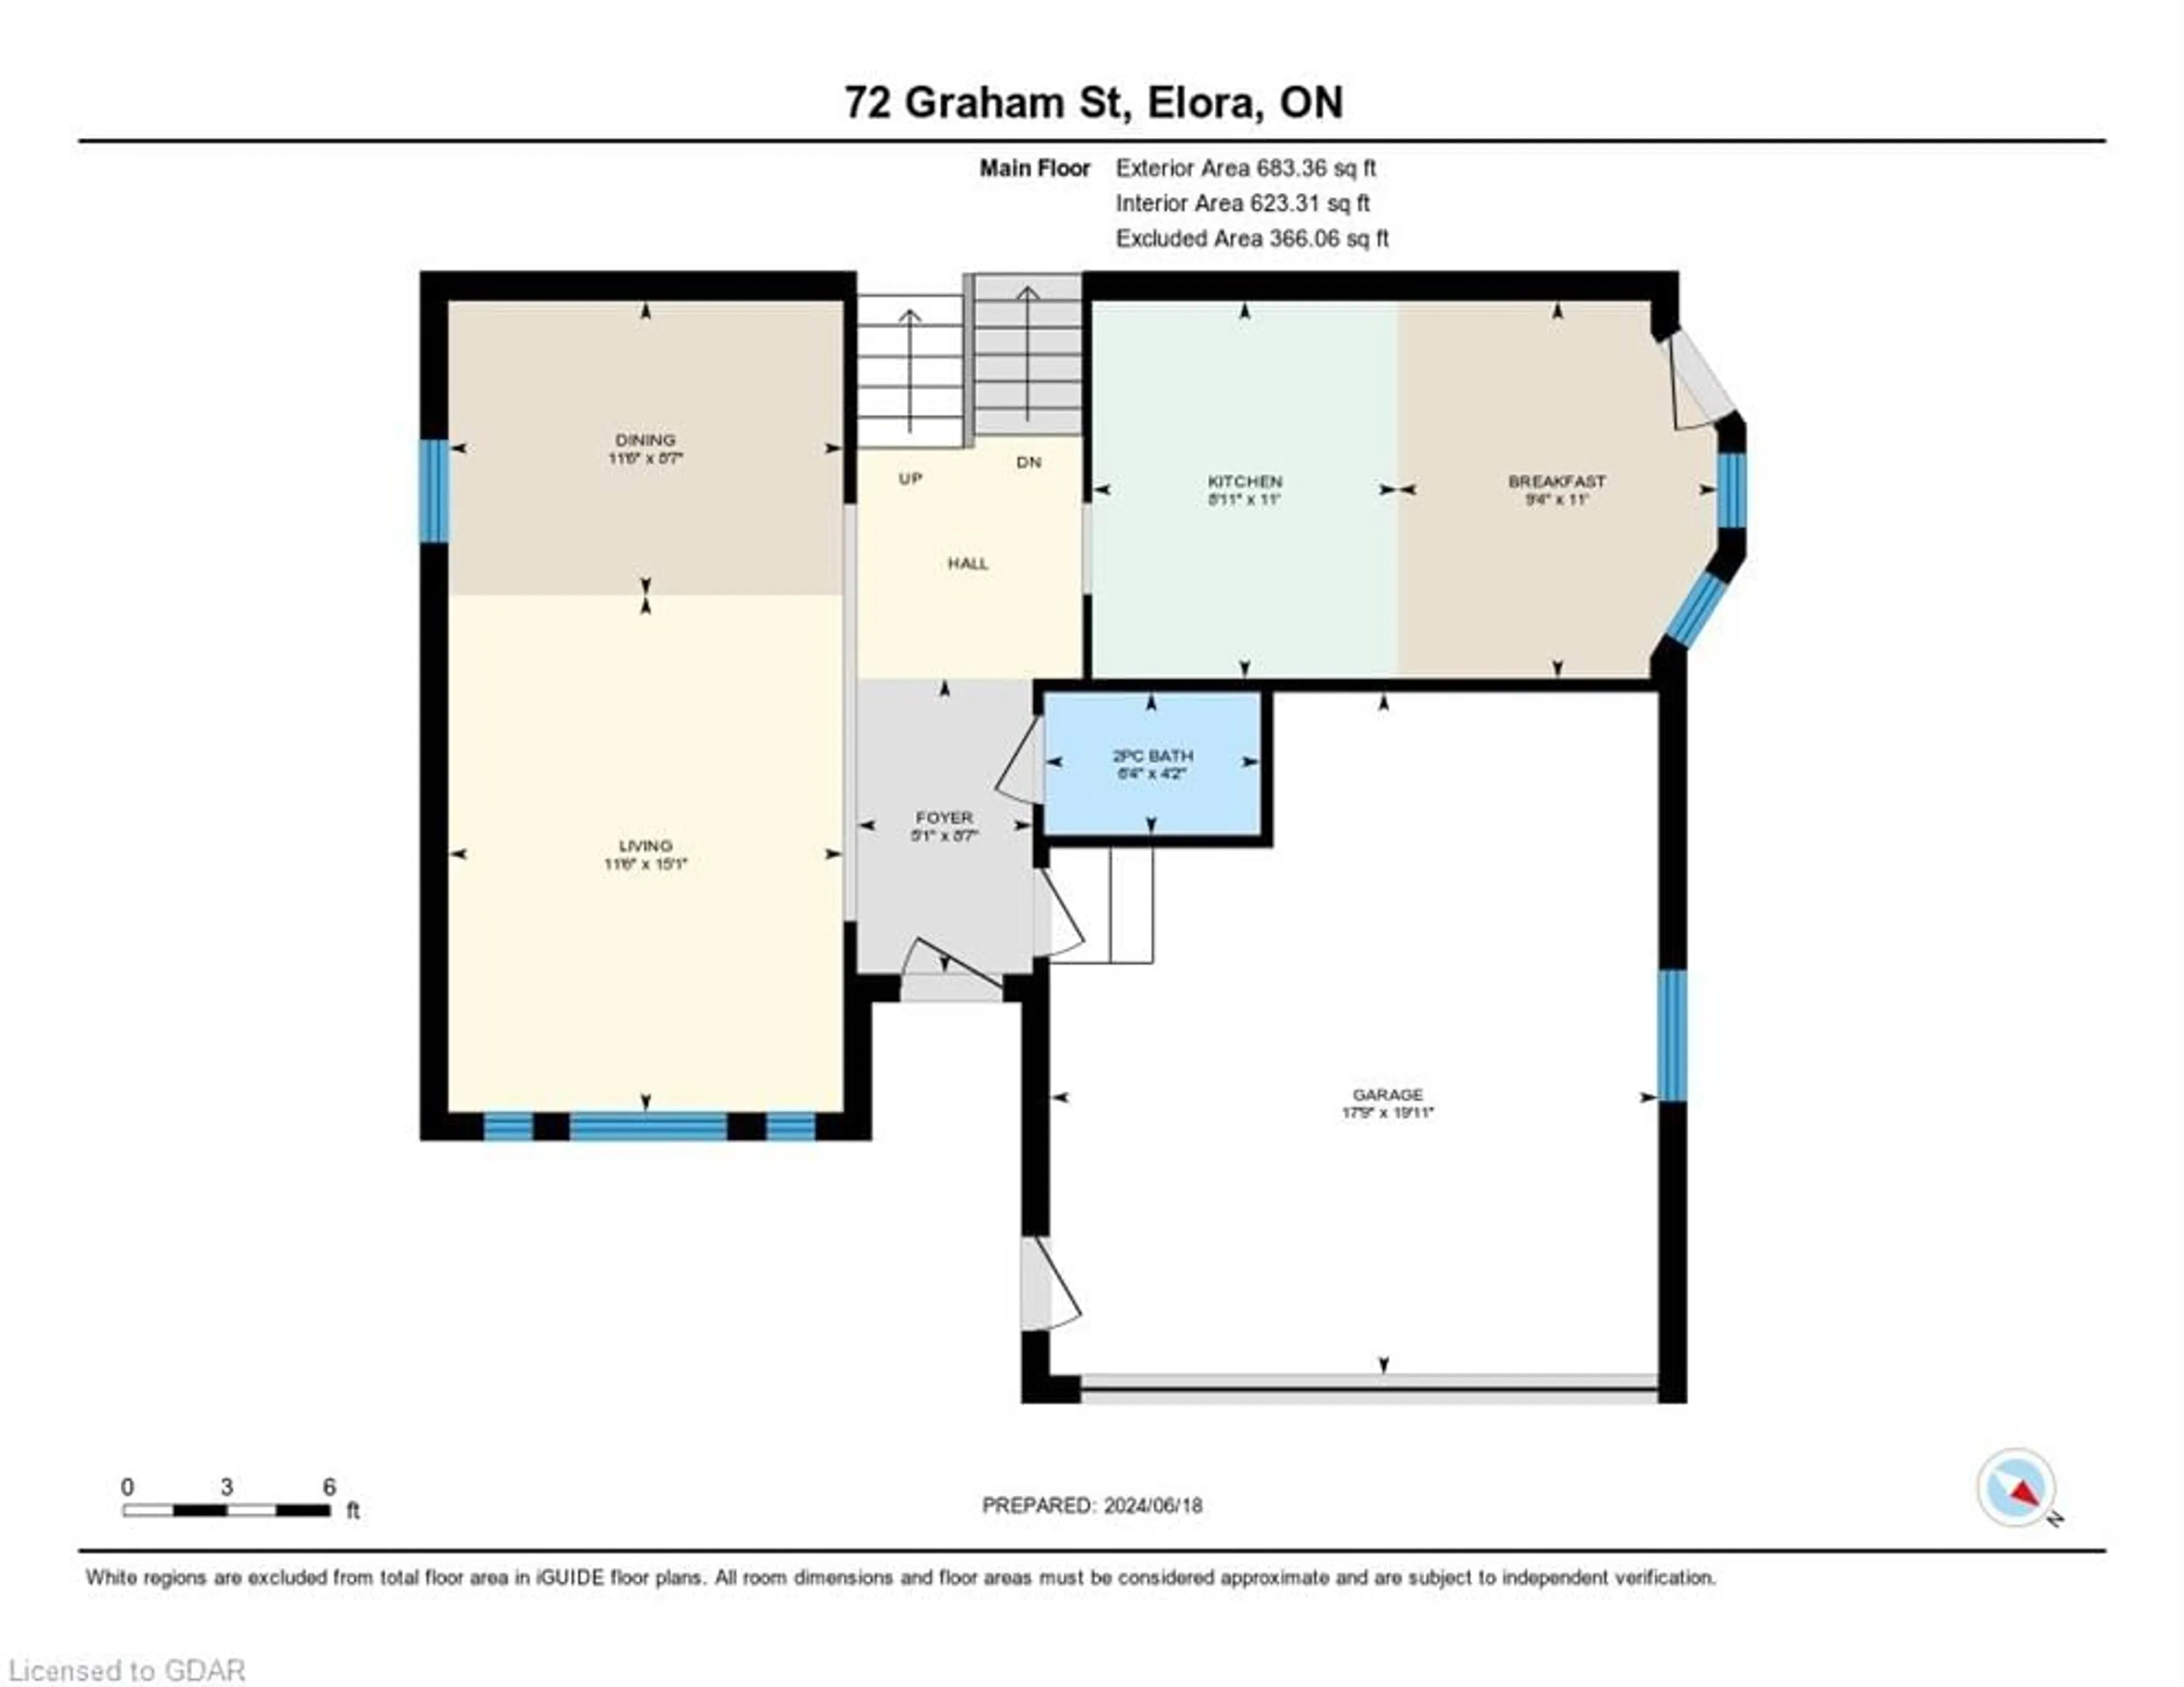 Floor plan for 72 Graham St, Elora Ontario N0B 1S0